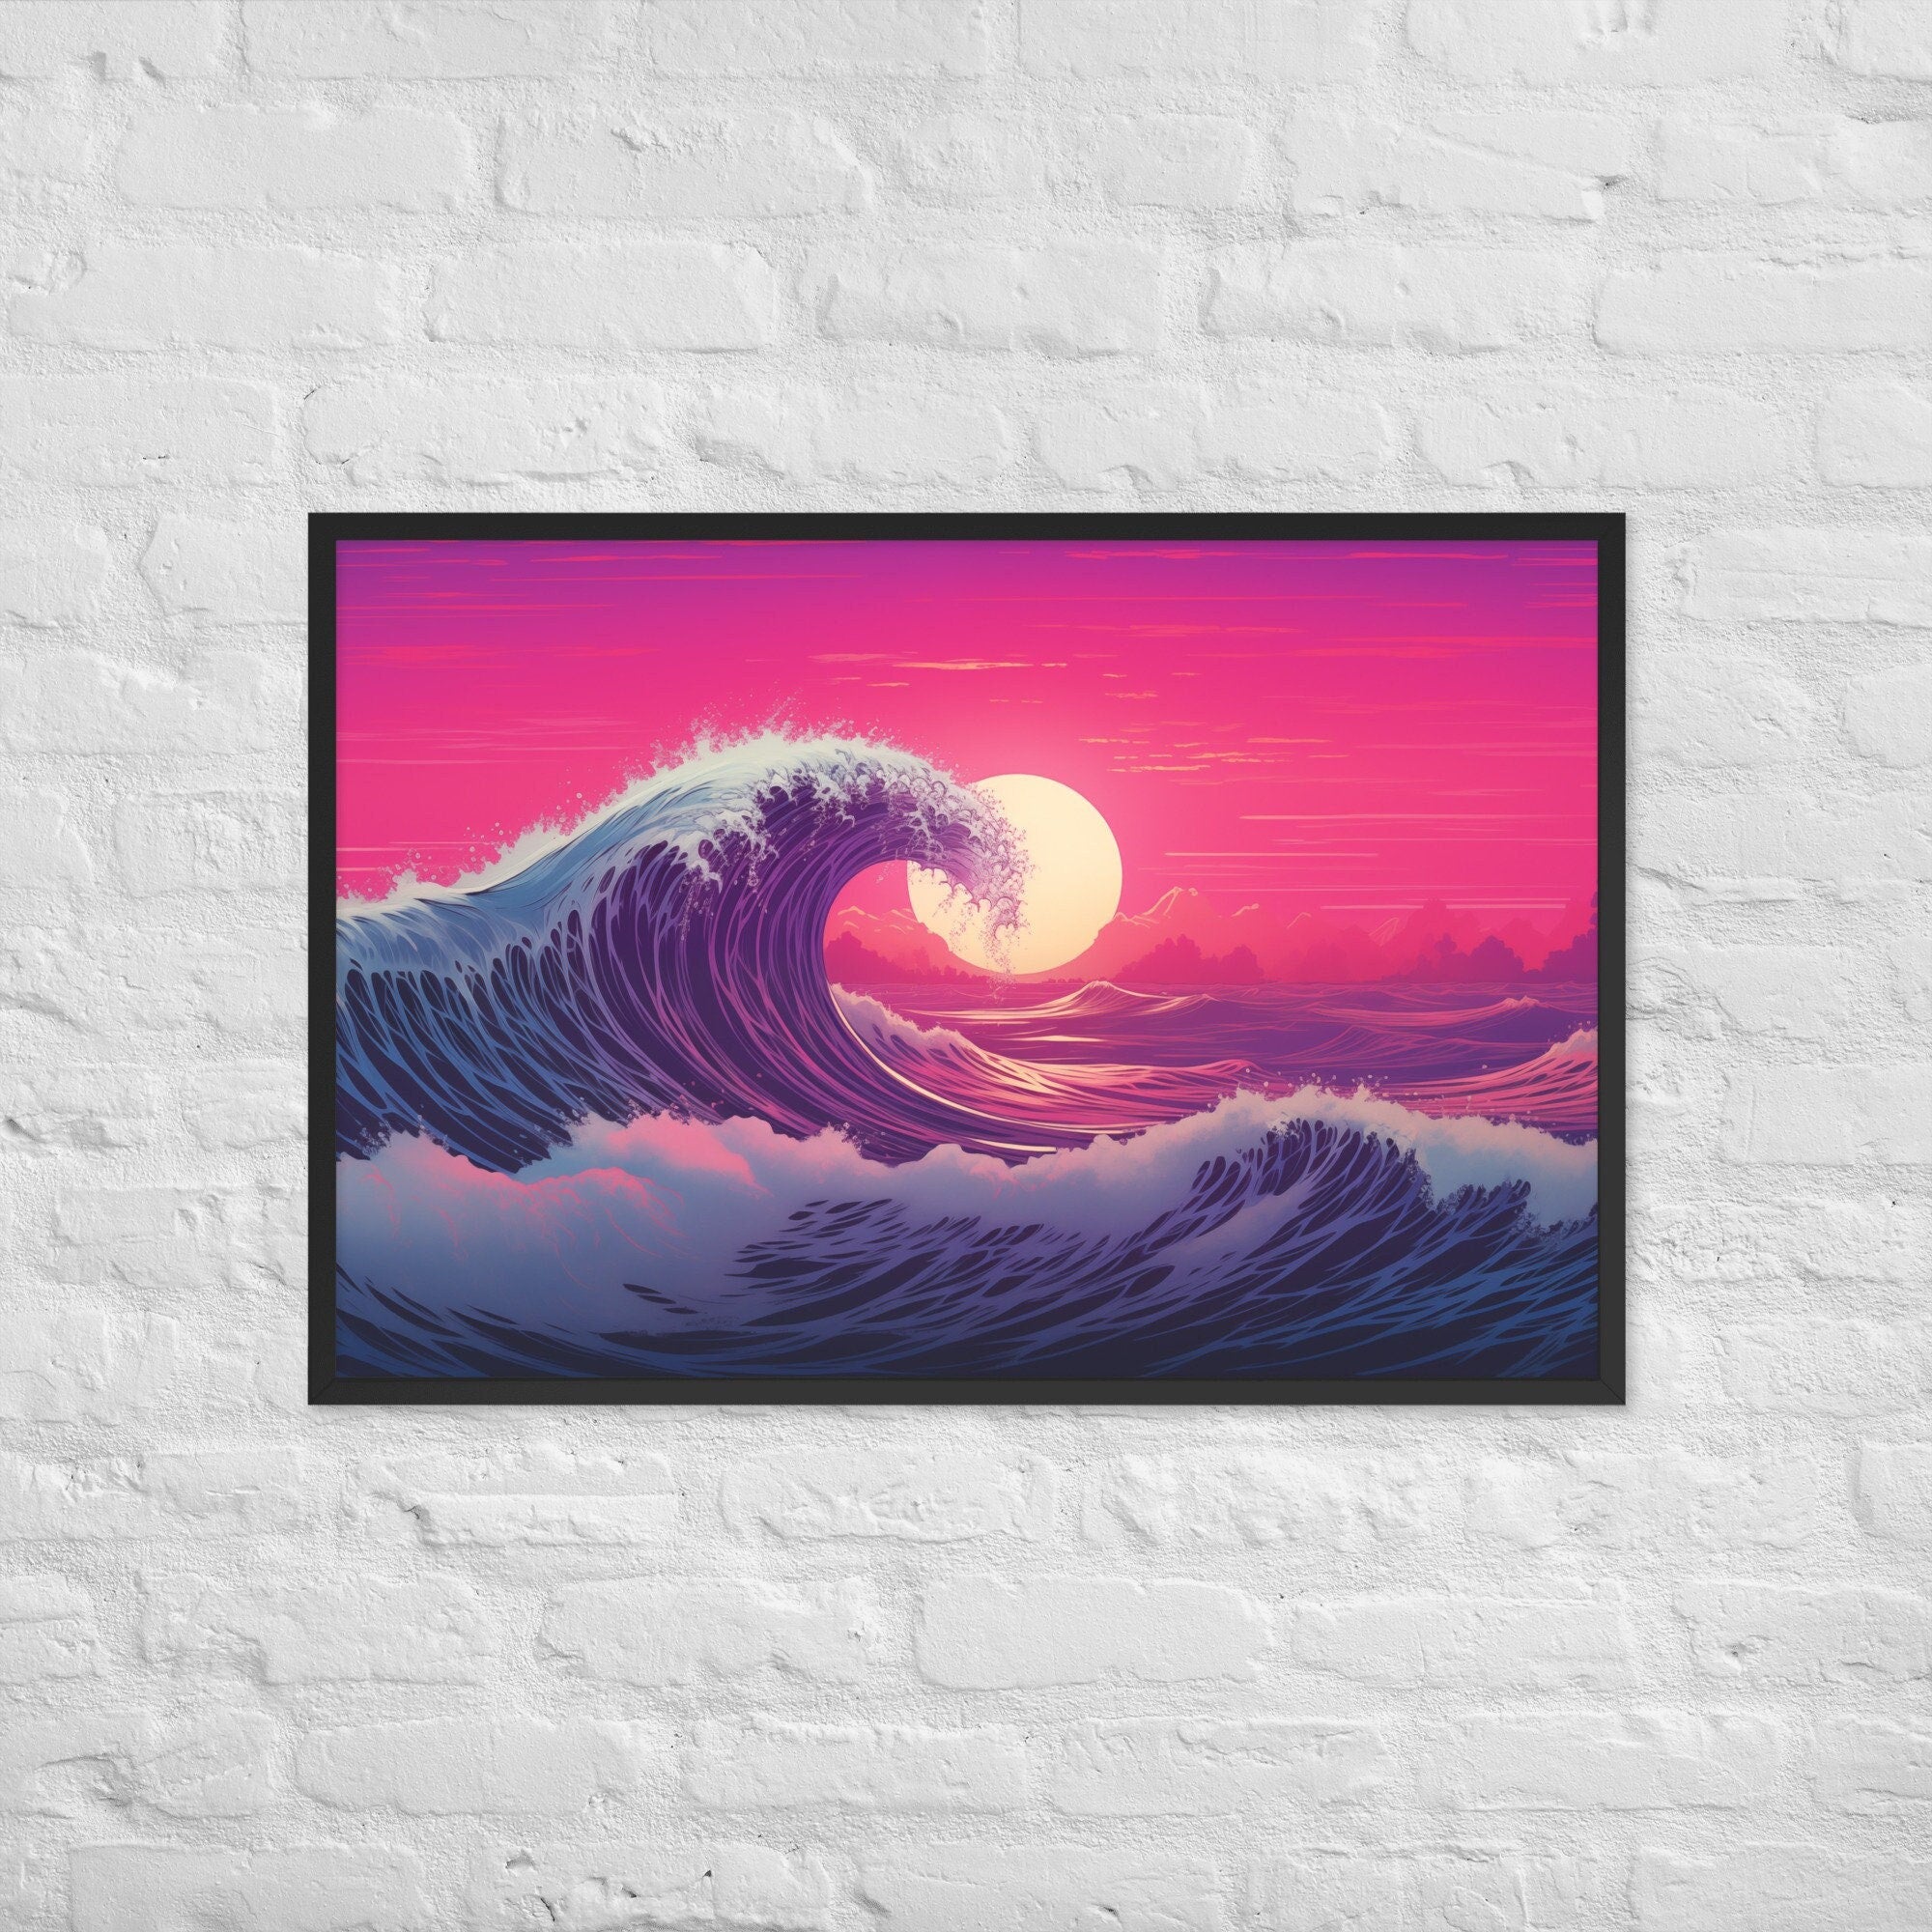 Retro Wave: Pink and Purple Tropical Landscape Framed Poster, Rad 80s, 90s, Japanese, Tidal Wave, Nostalgia Vaporwave Retrowave Ocean Dreams